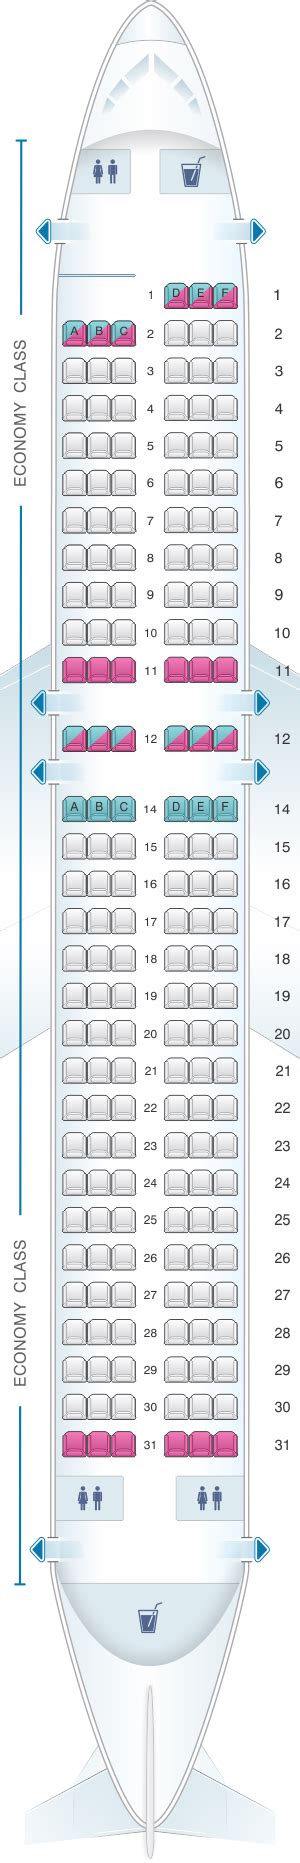 Allegiant Air Airbus A320 Seat Map; Seat 23d; Allegian